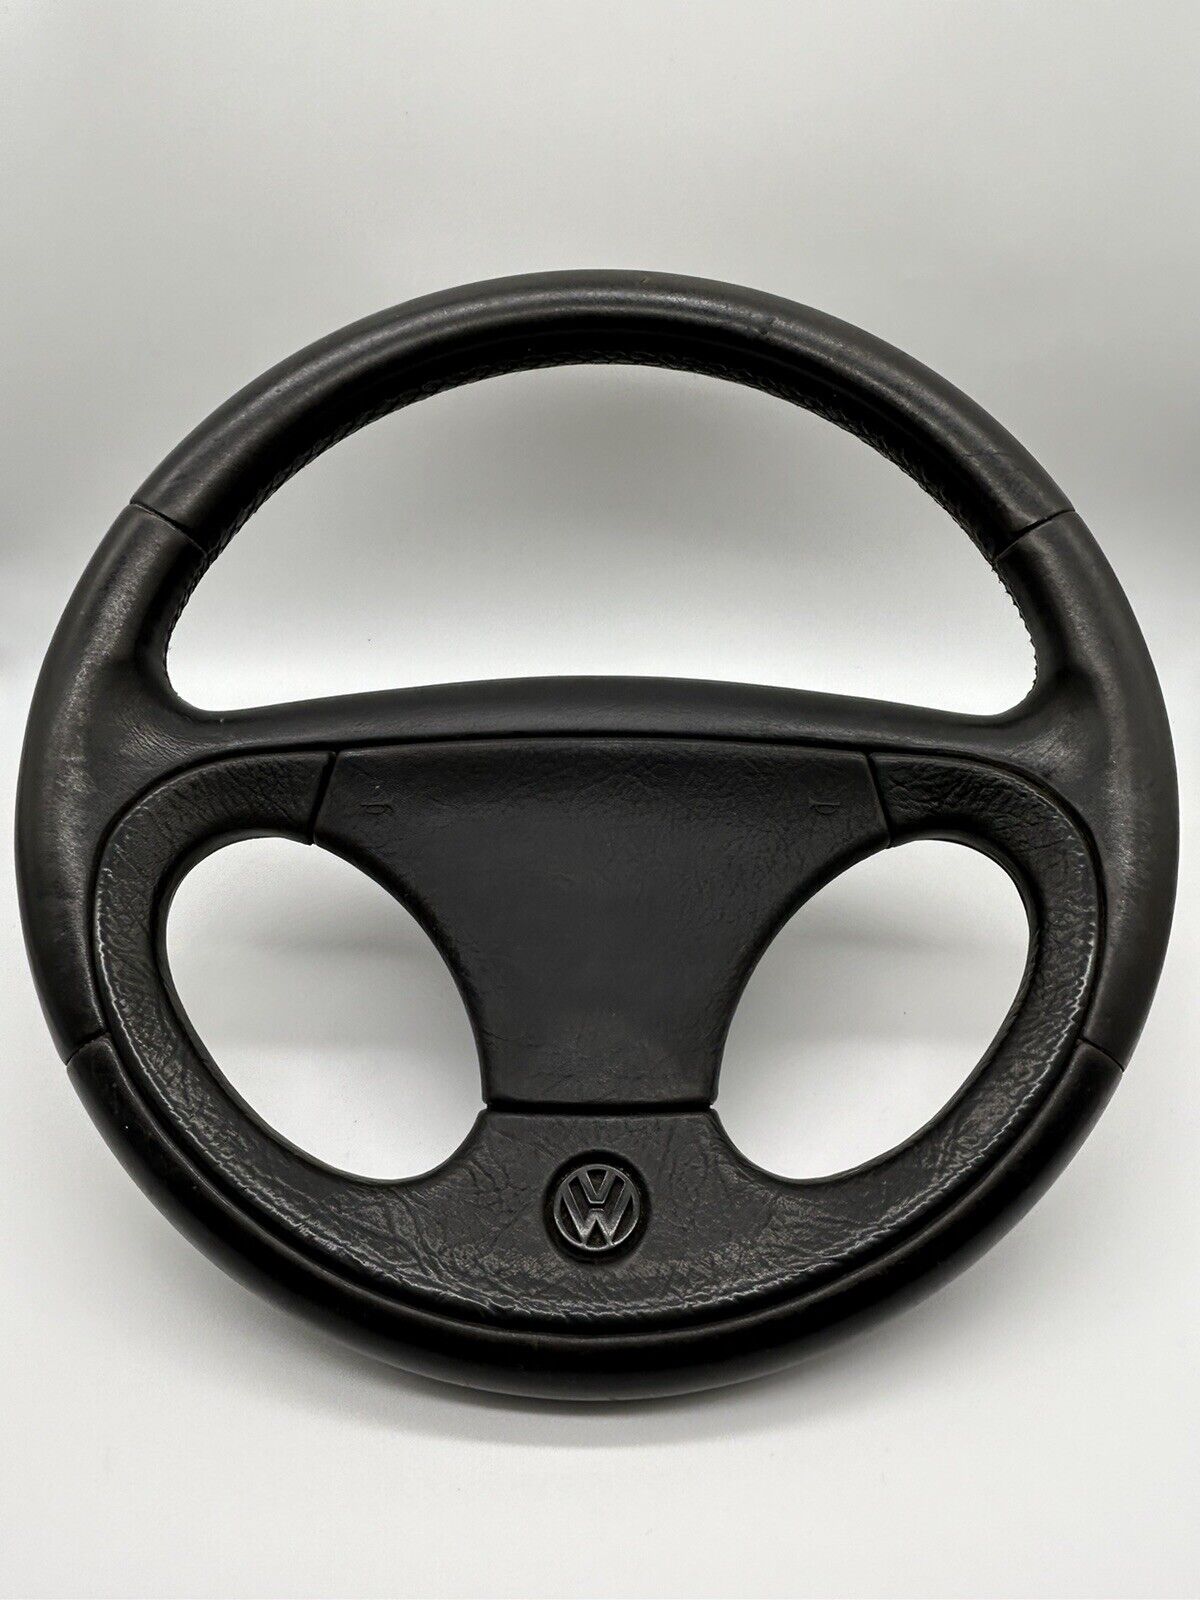 Volkswagen Corrado Euro Steering Wheel